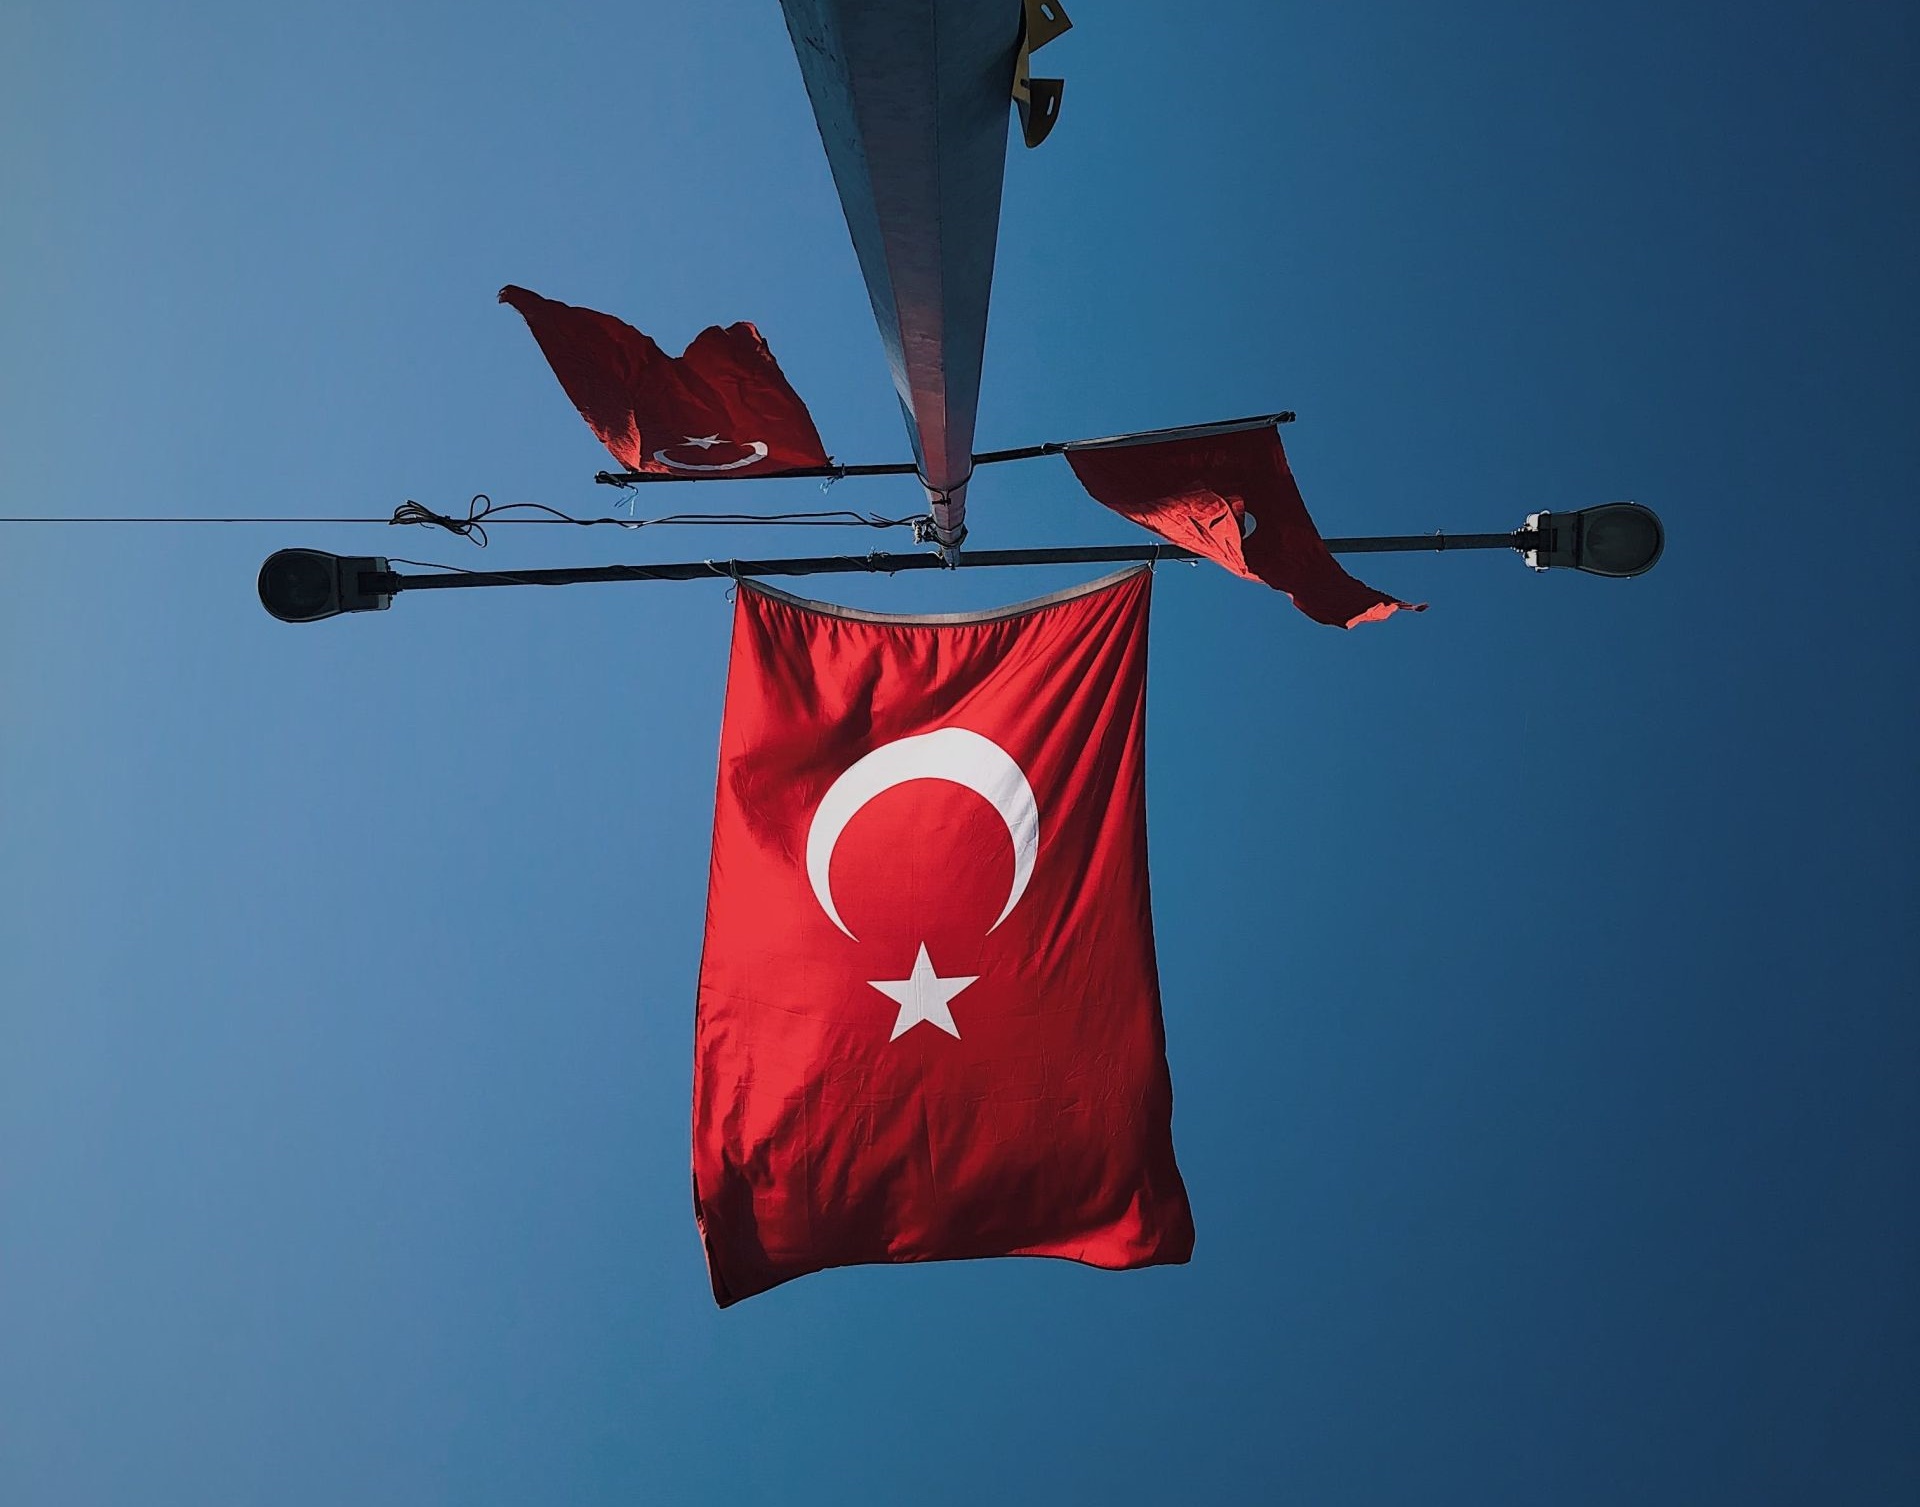 Τουρκία πυροβολισμοί στο δικαστικό μέγαρο Κωνσταντινούπολης: Έξι τραυματίες